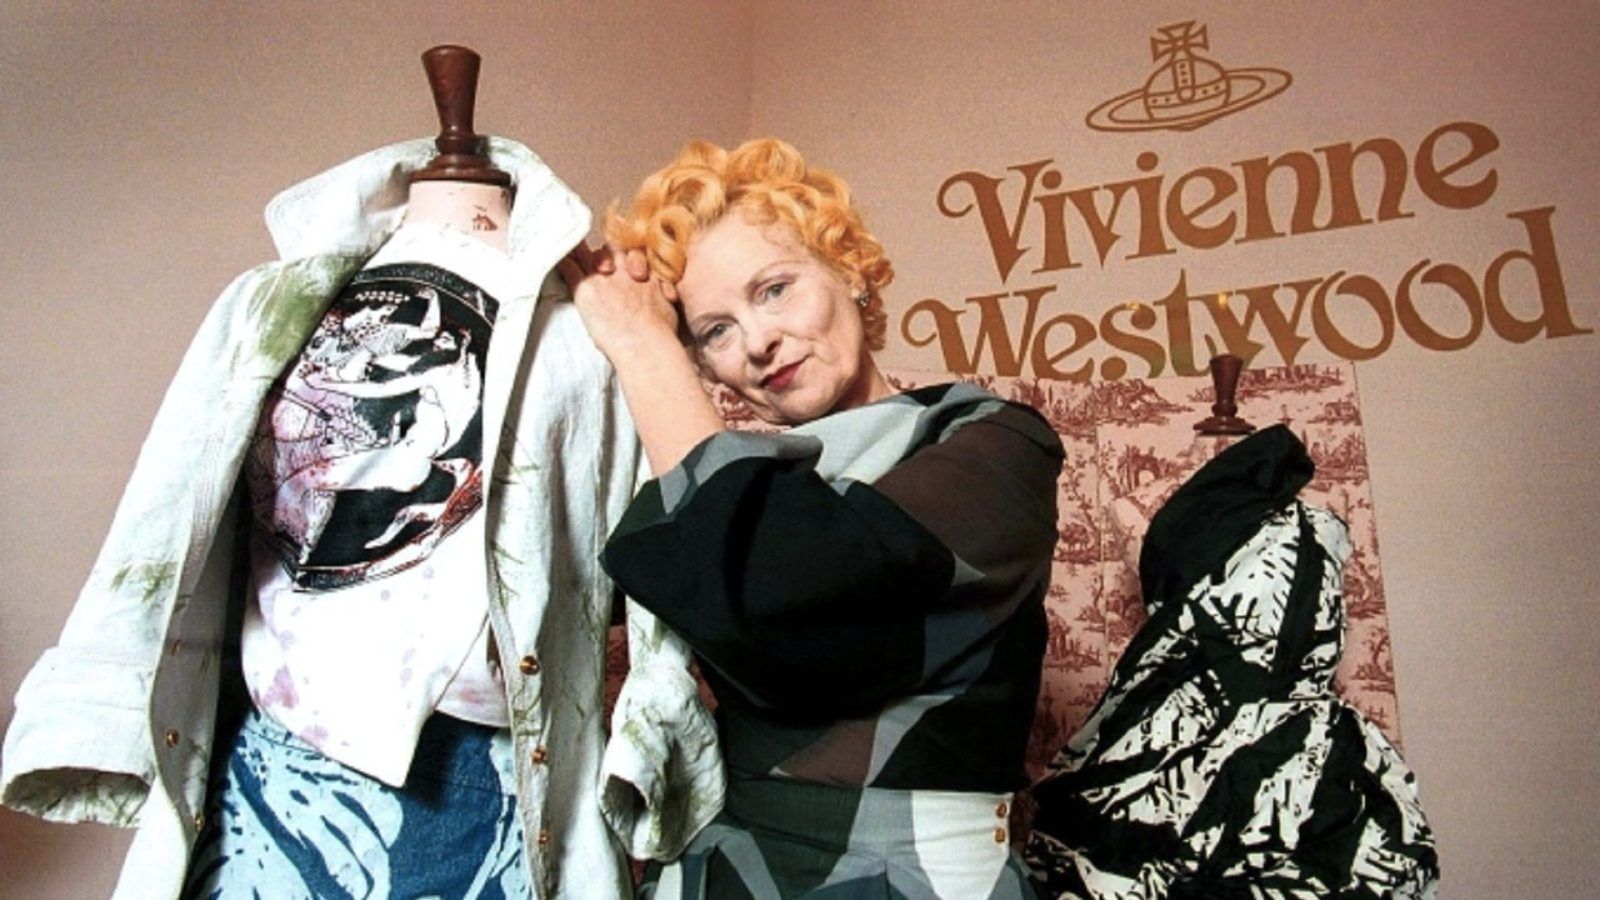 British fashion designer Vivienne Westwood dies at 81 – DW – 12/29